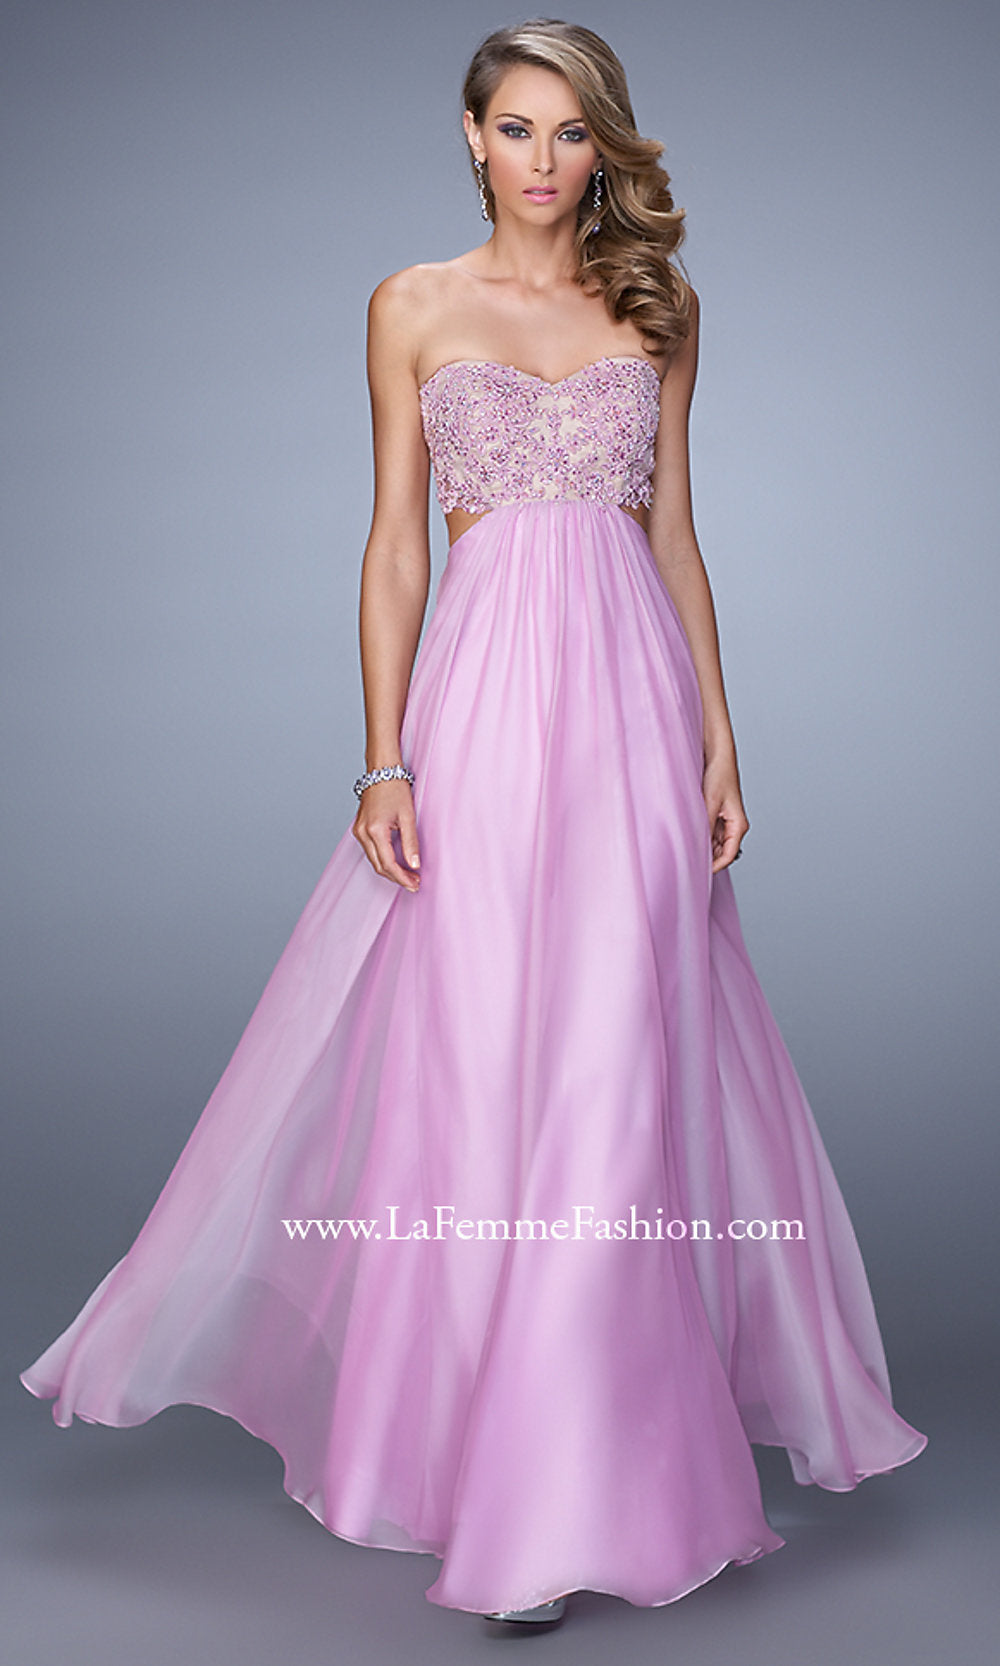 Lavender La Femme Prom Dress with Cut Out Waist 20898